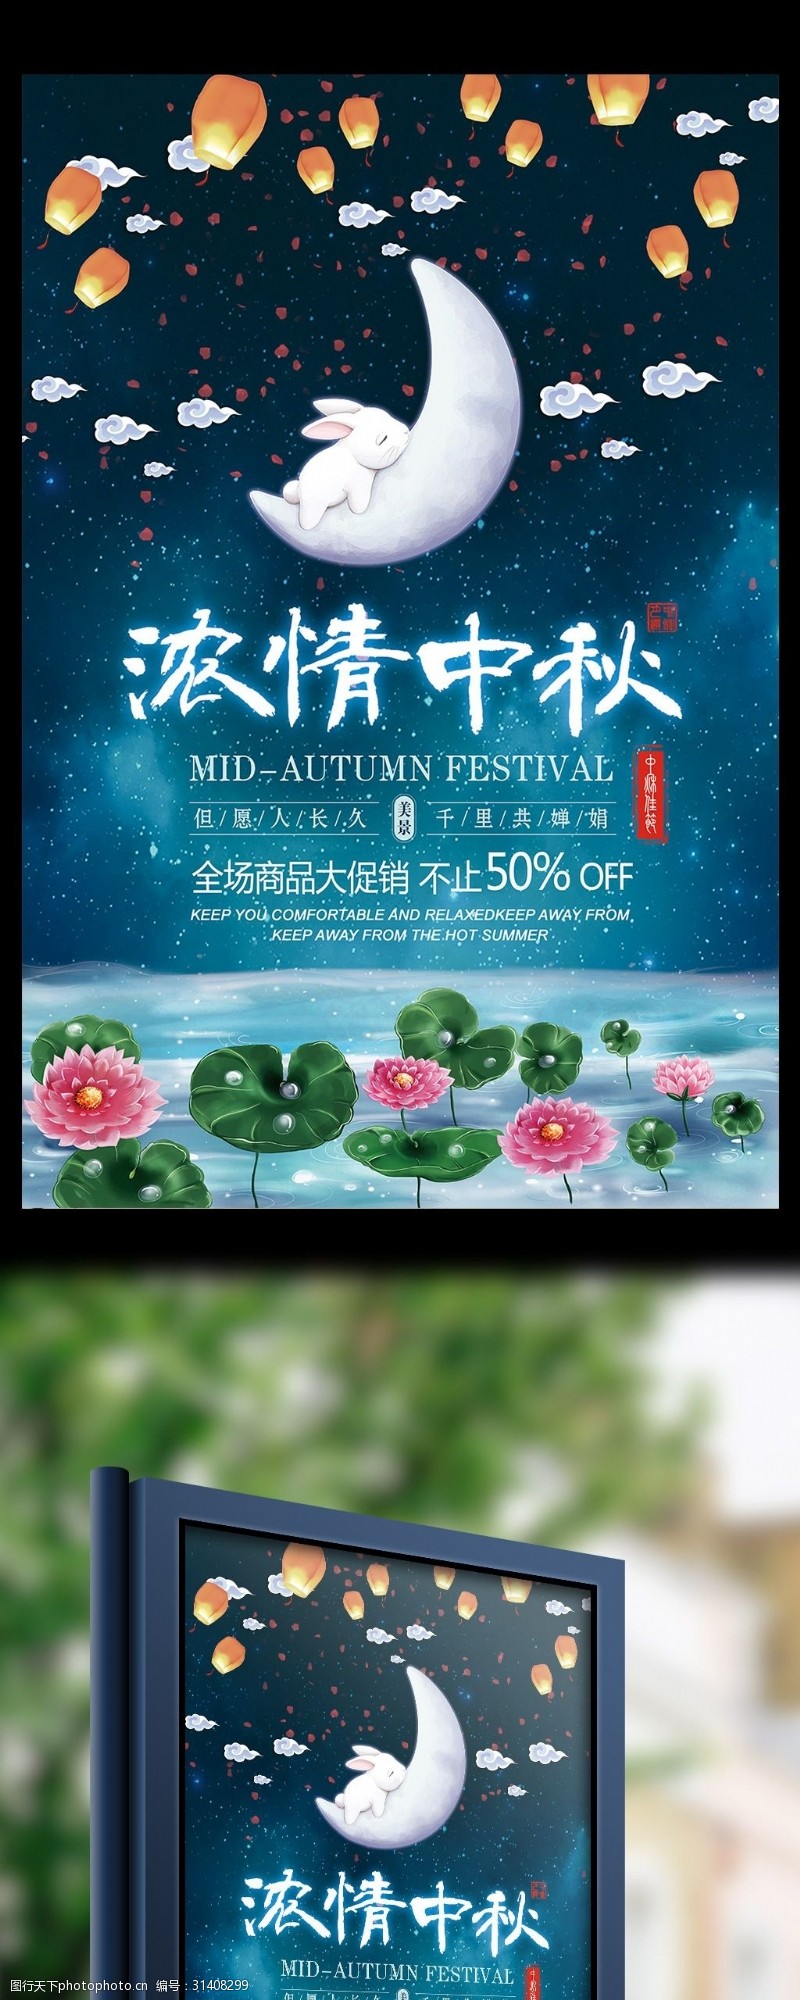 大气蓝色背景浓情中秋传统节日海报设计